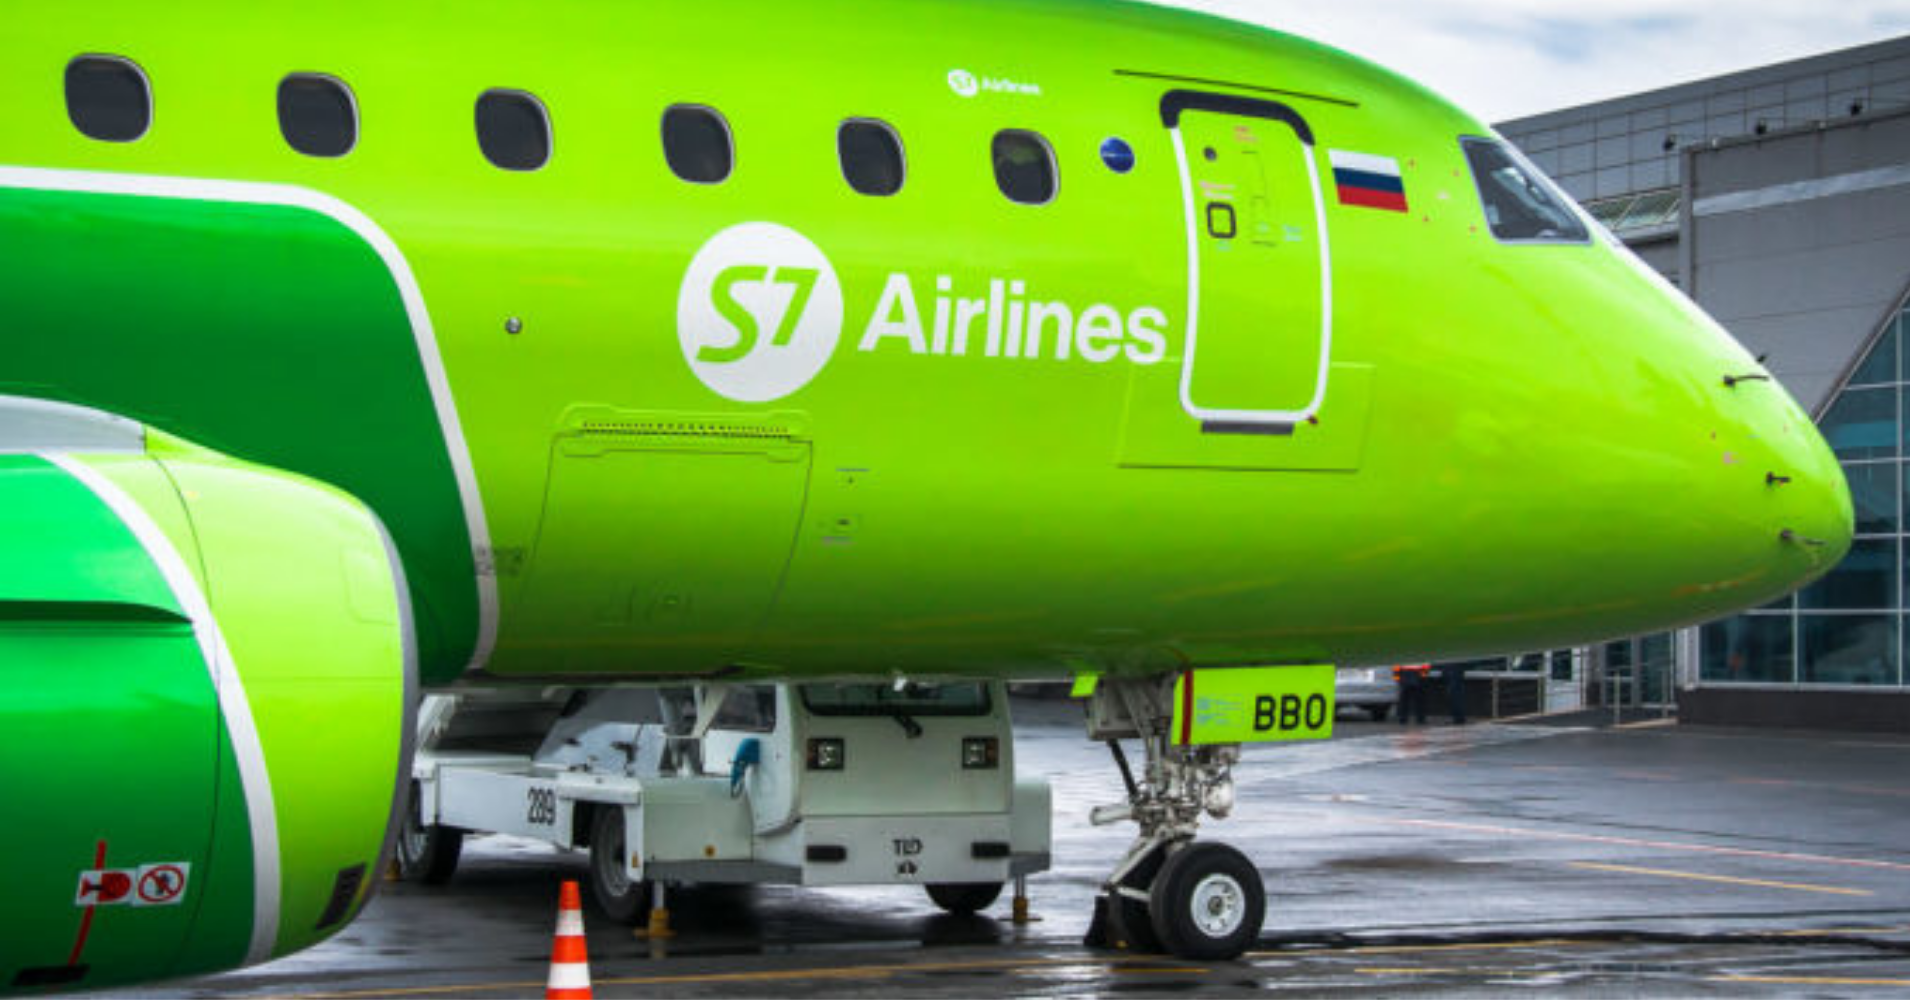 S7 Airlines начала выполнять авиарейсы в Новосибирск из Нур-Султана